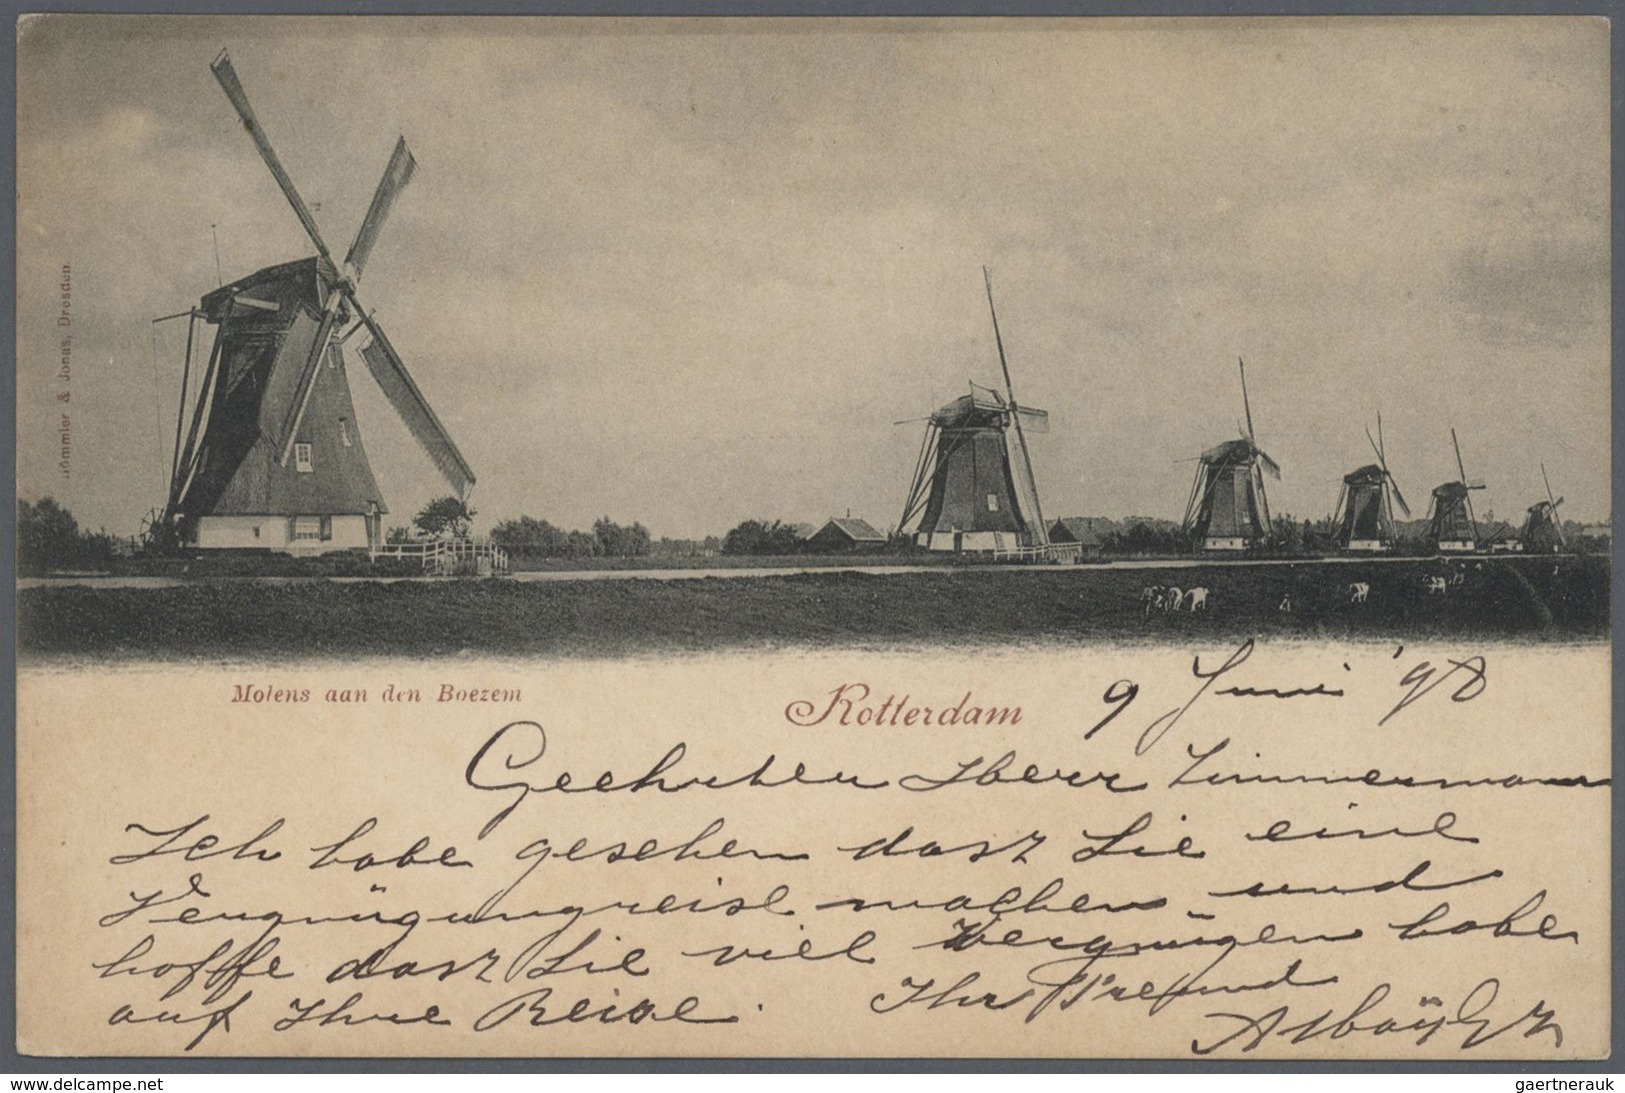 27452 Niederlande: 1892 - 1947, Sammlung von über 100 Ansichtskarten, bis auf wenige Ausnahmen bedarfsgere